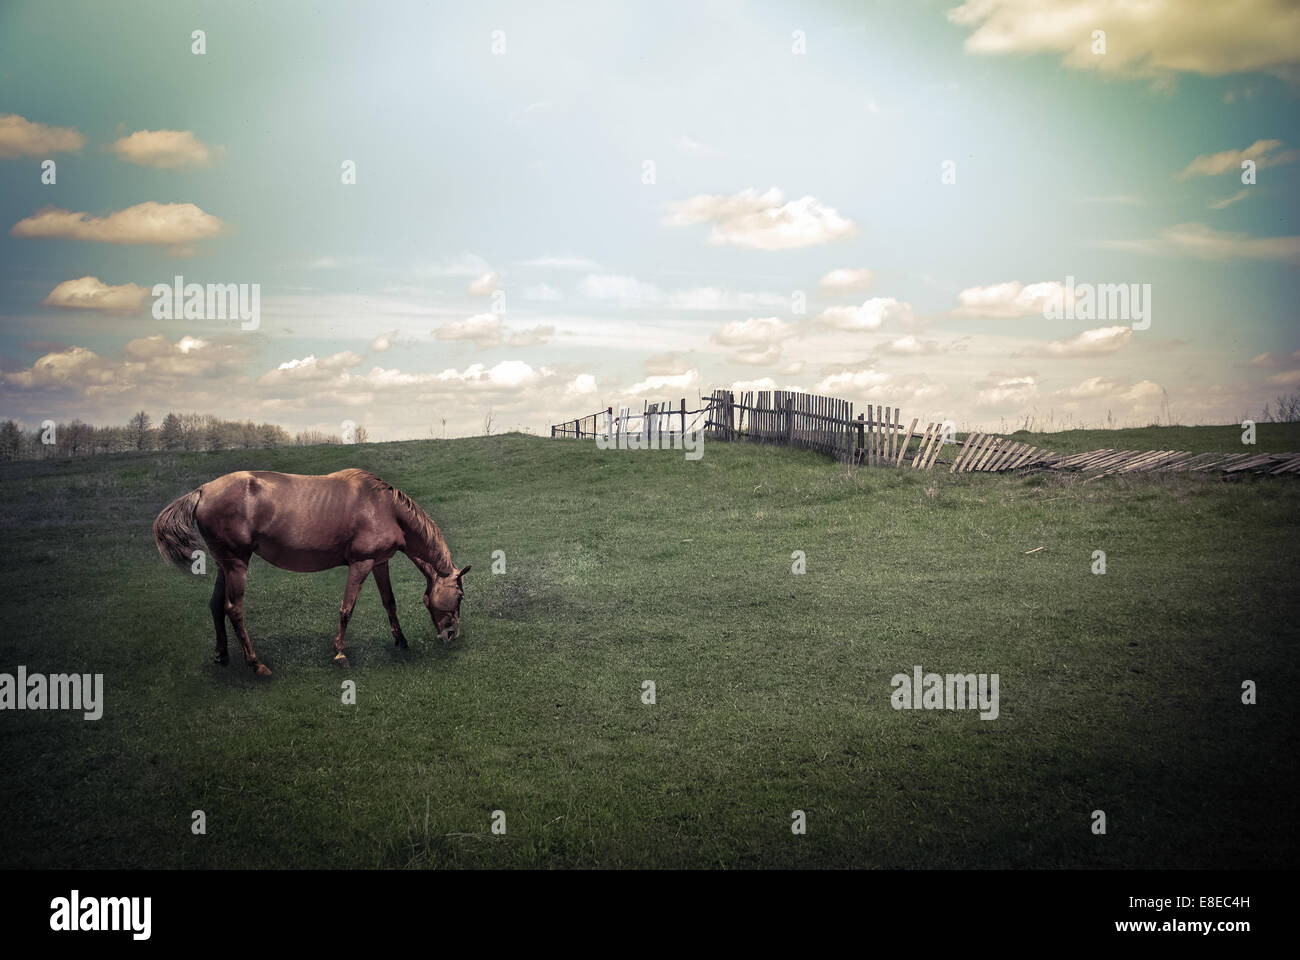 Sonniger Tag im Lande. Sommer Landschaft mit Pferd auf Weideflächen unter blauen Wolkenhimmel. Natur-Hintergrund im Vintage-Stil Stockfoto